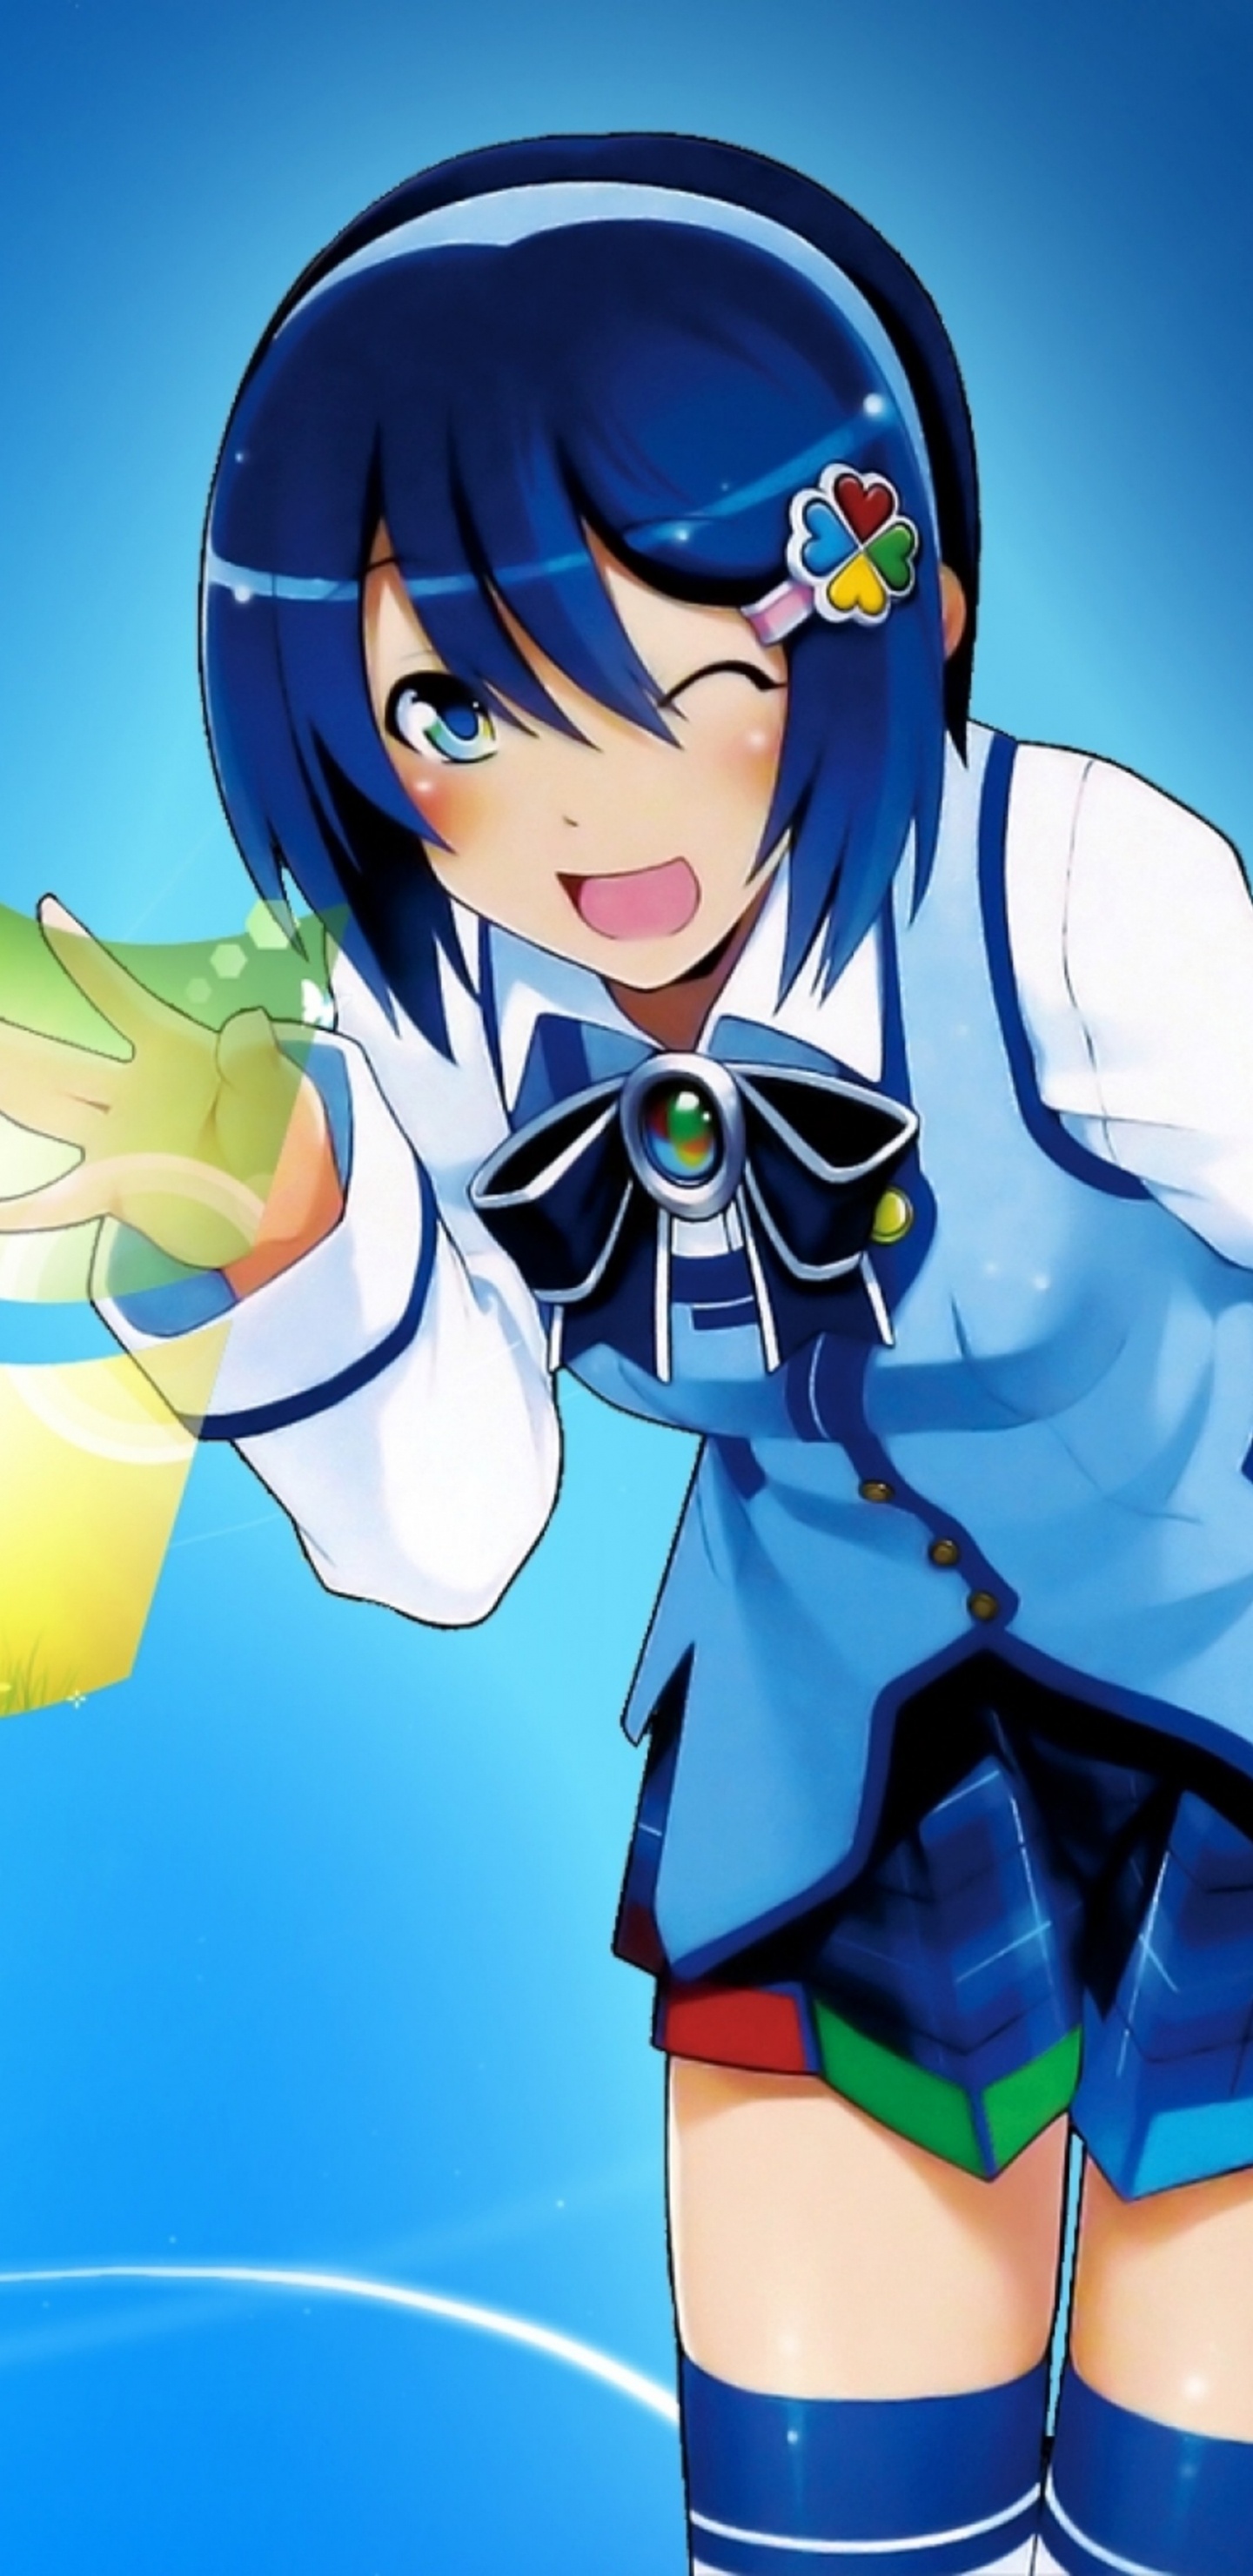 Mujer en Uniforme Escolar Azul y Blanco Personaje de Anime. Wallpaper in 1440x2960 Resolution